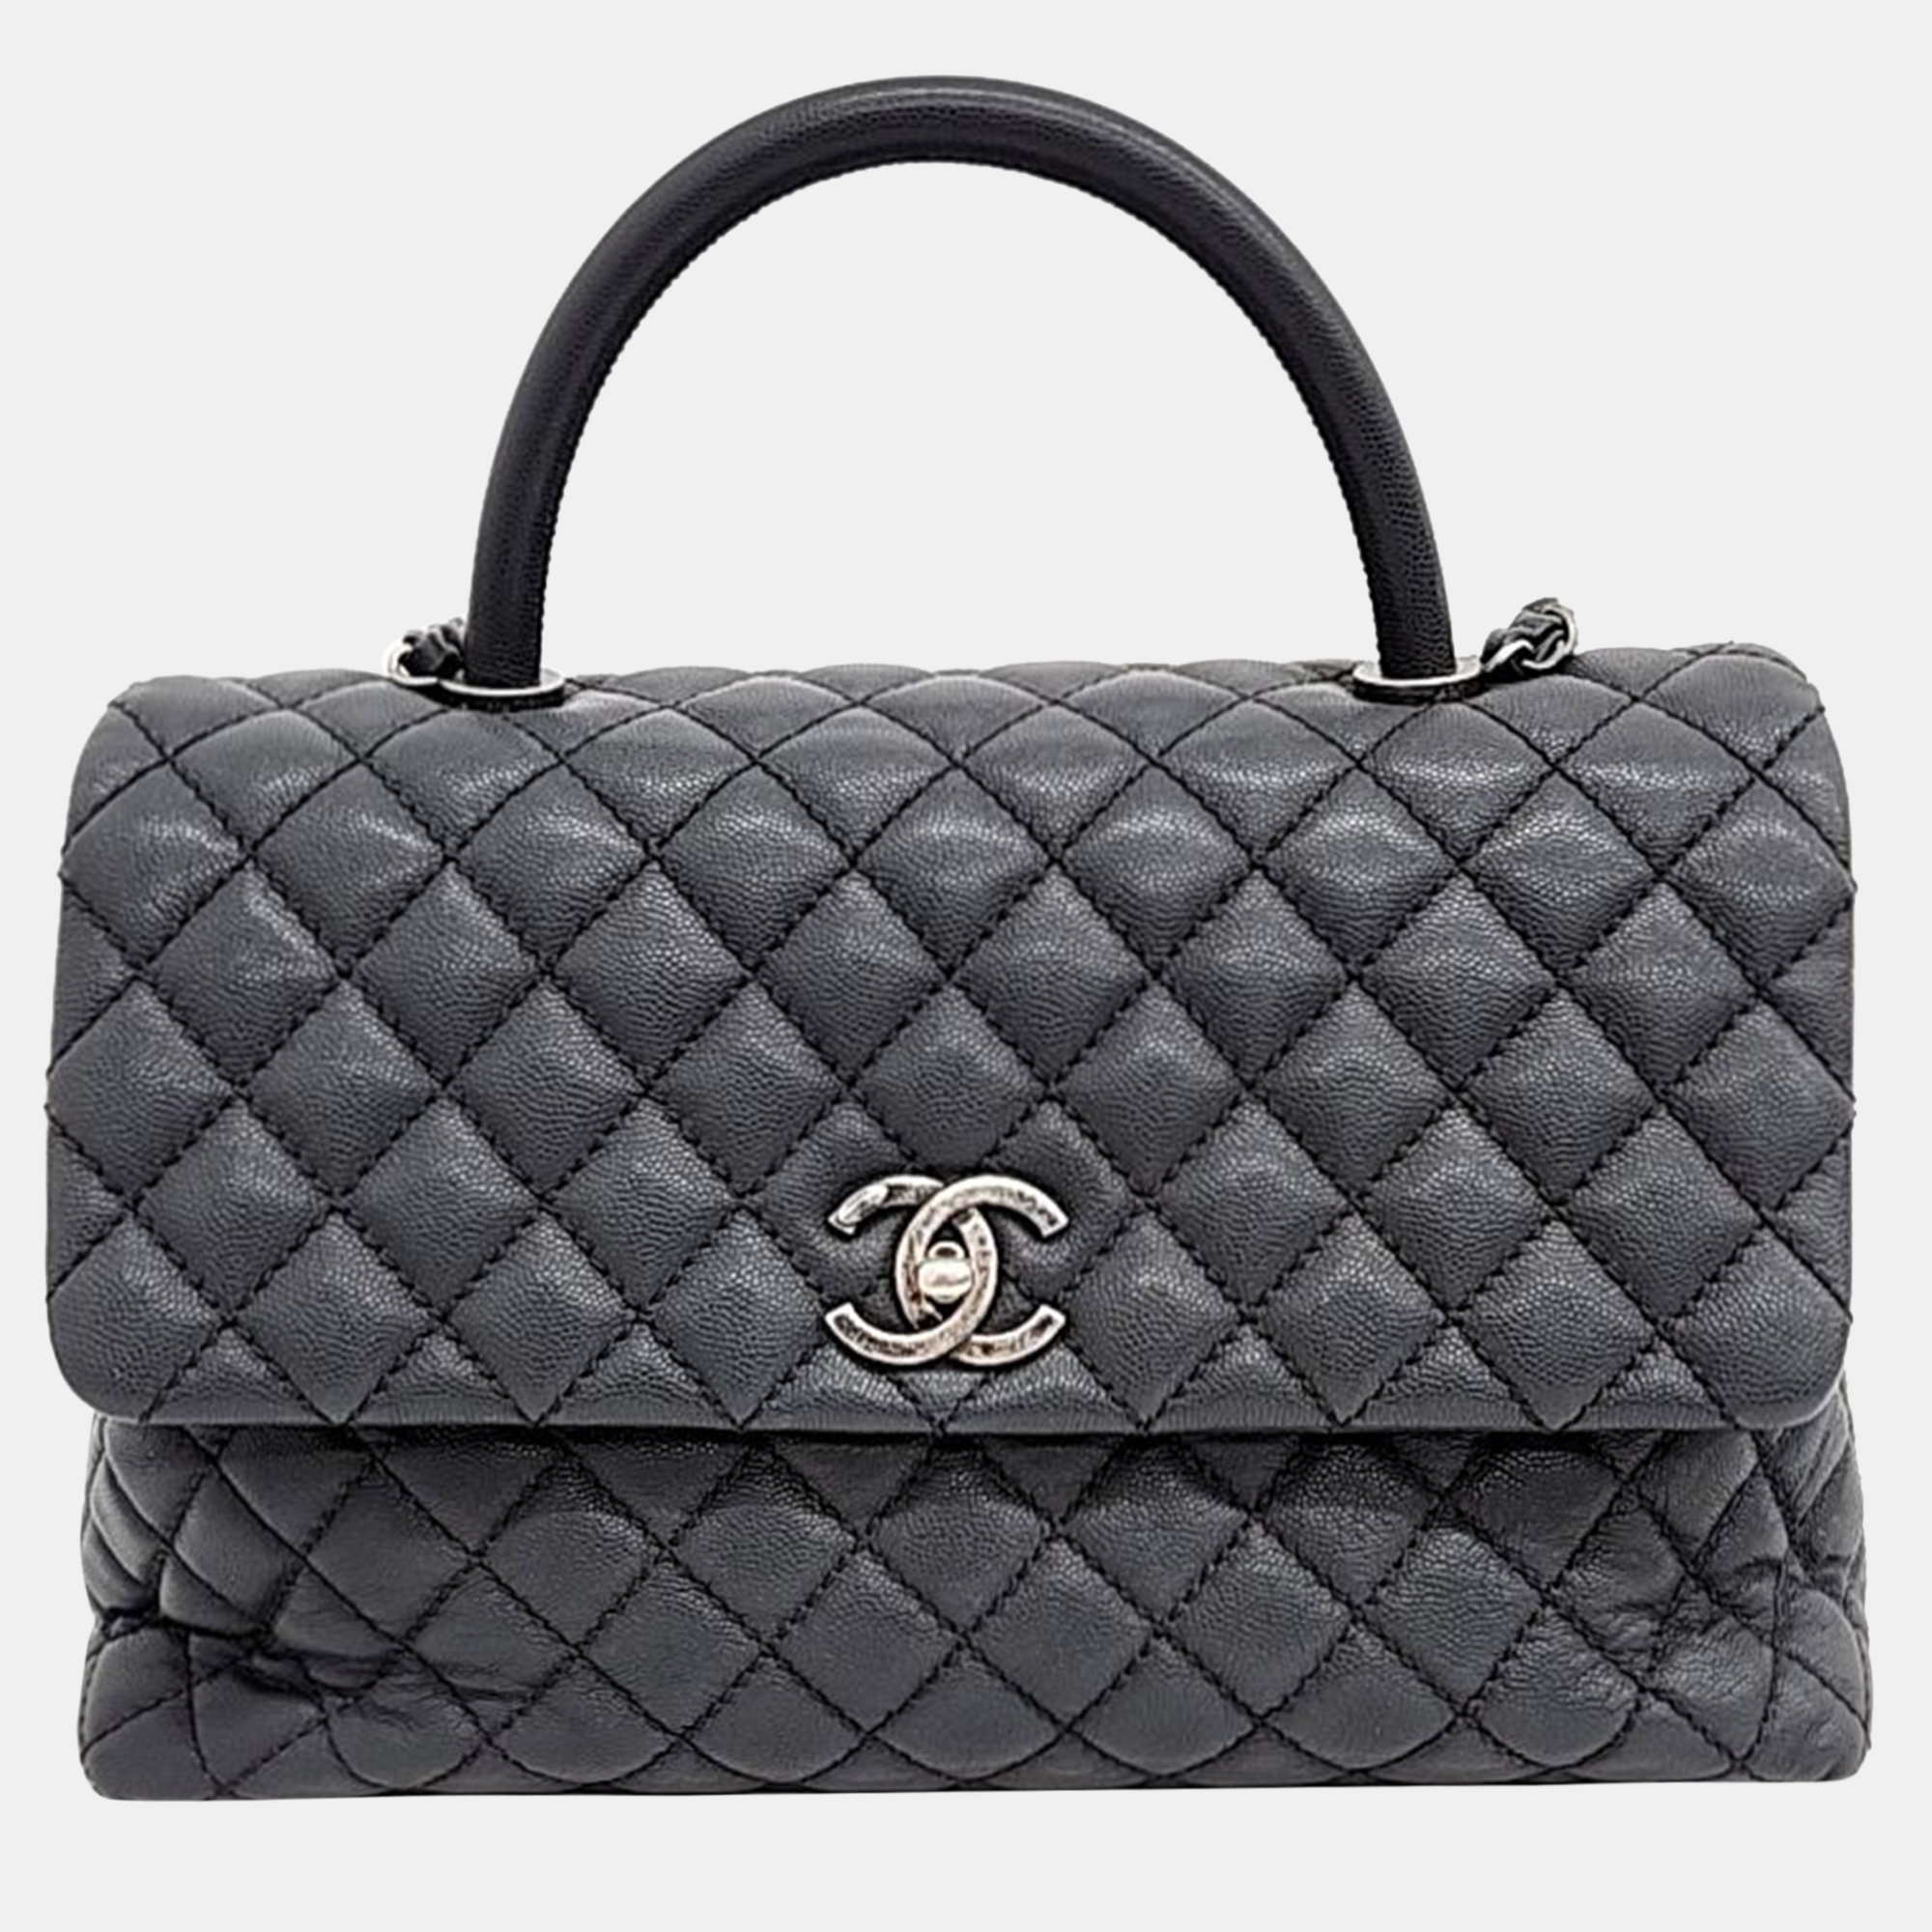 Chanel caviar coco handle 31 bag